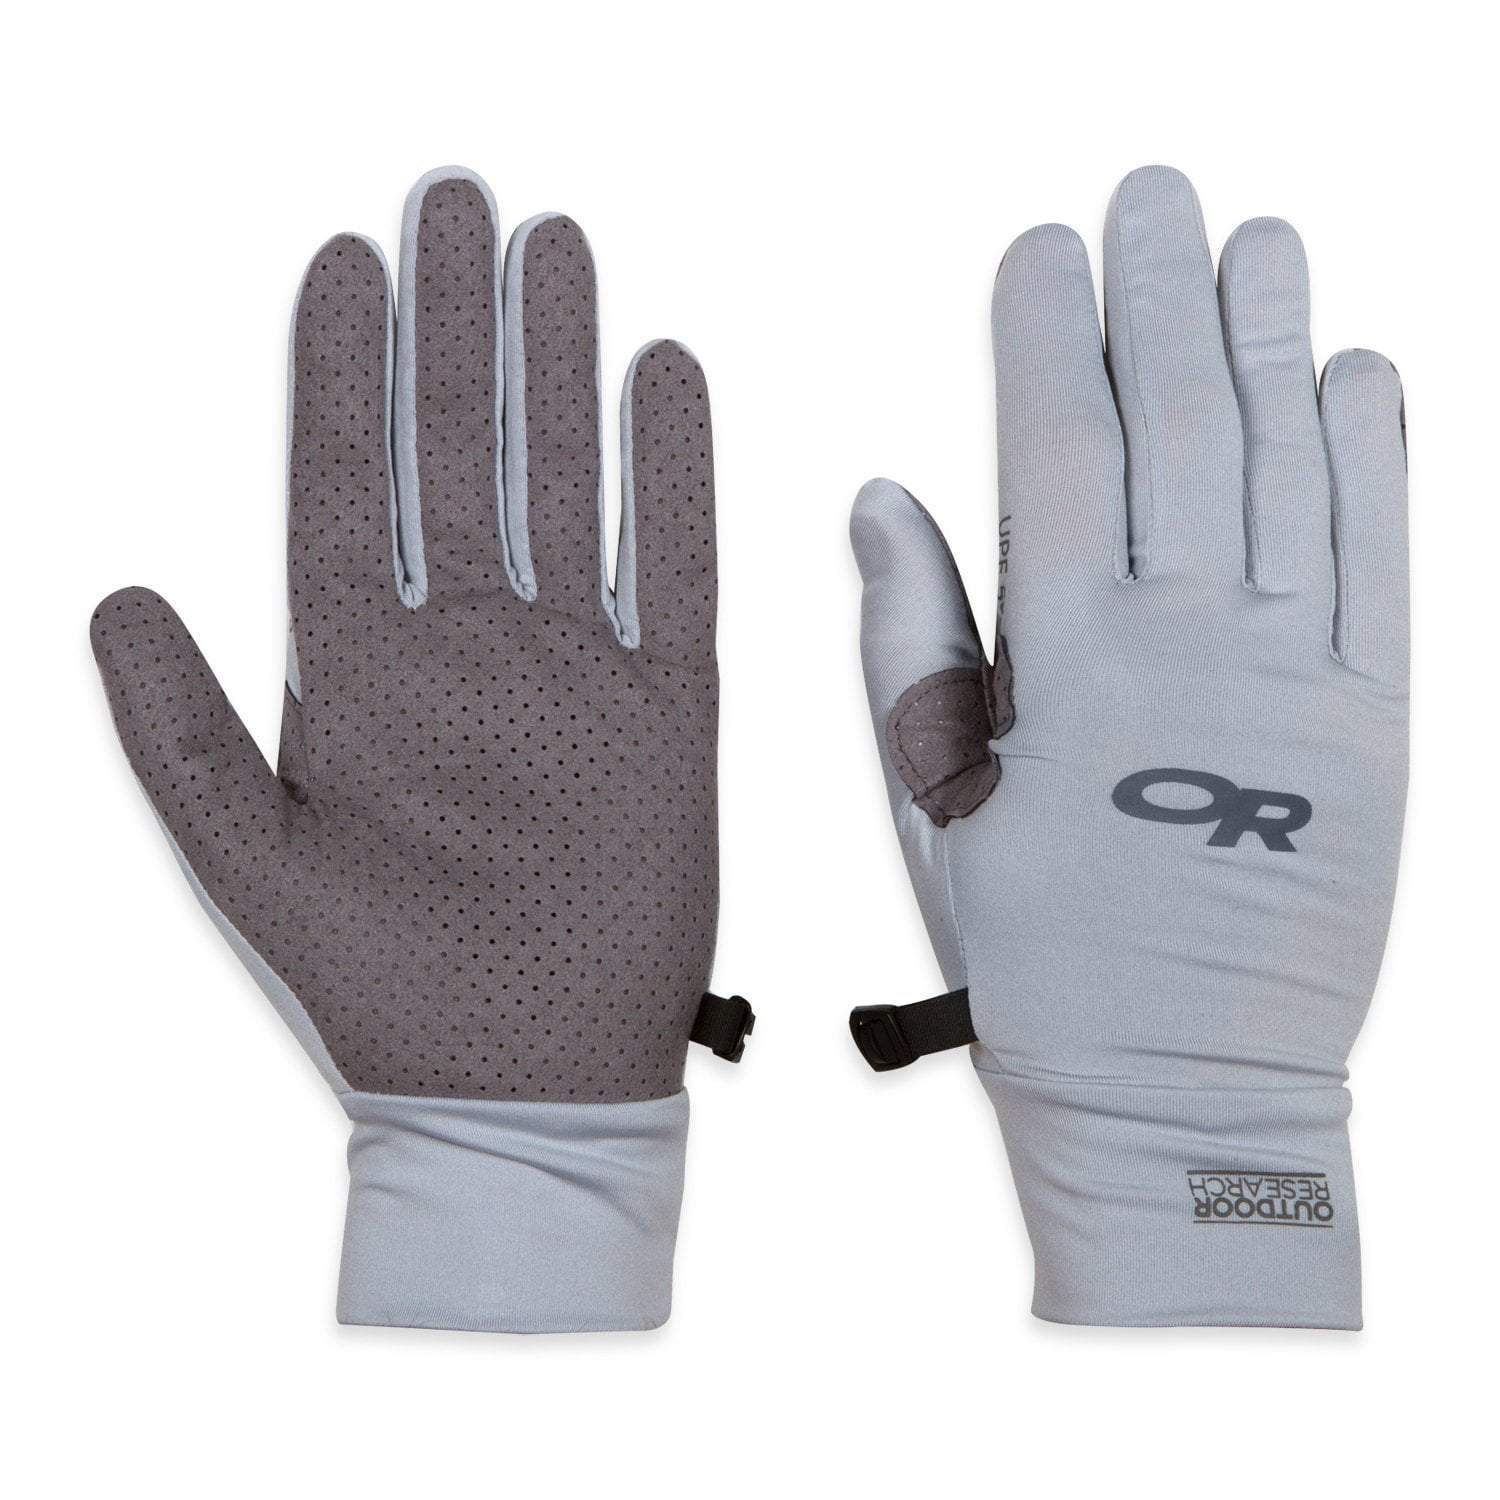 Outdoor Research Full Finger Chroma Sun Gloves - Unisex